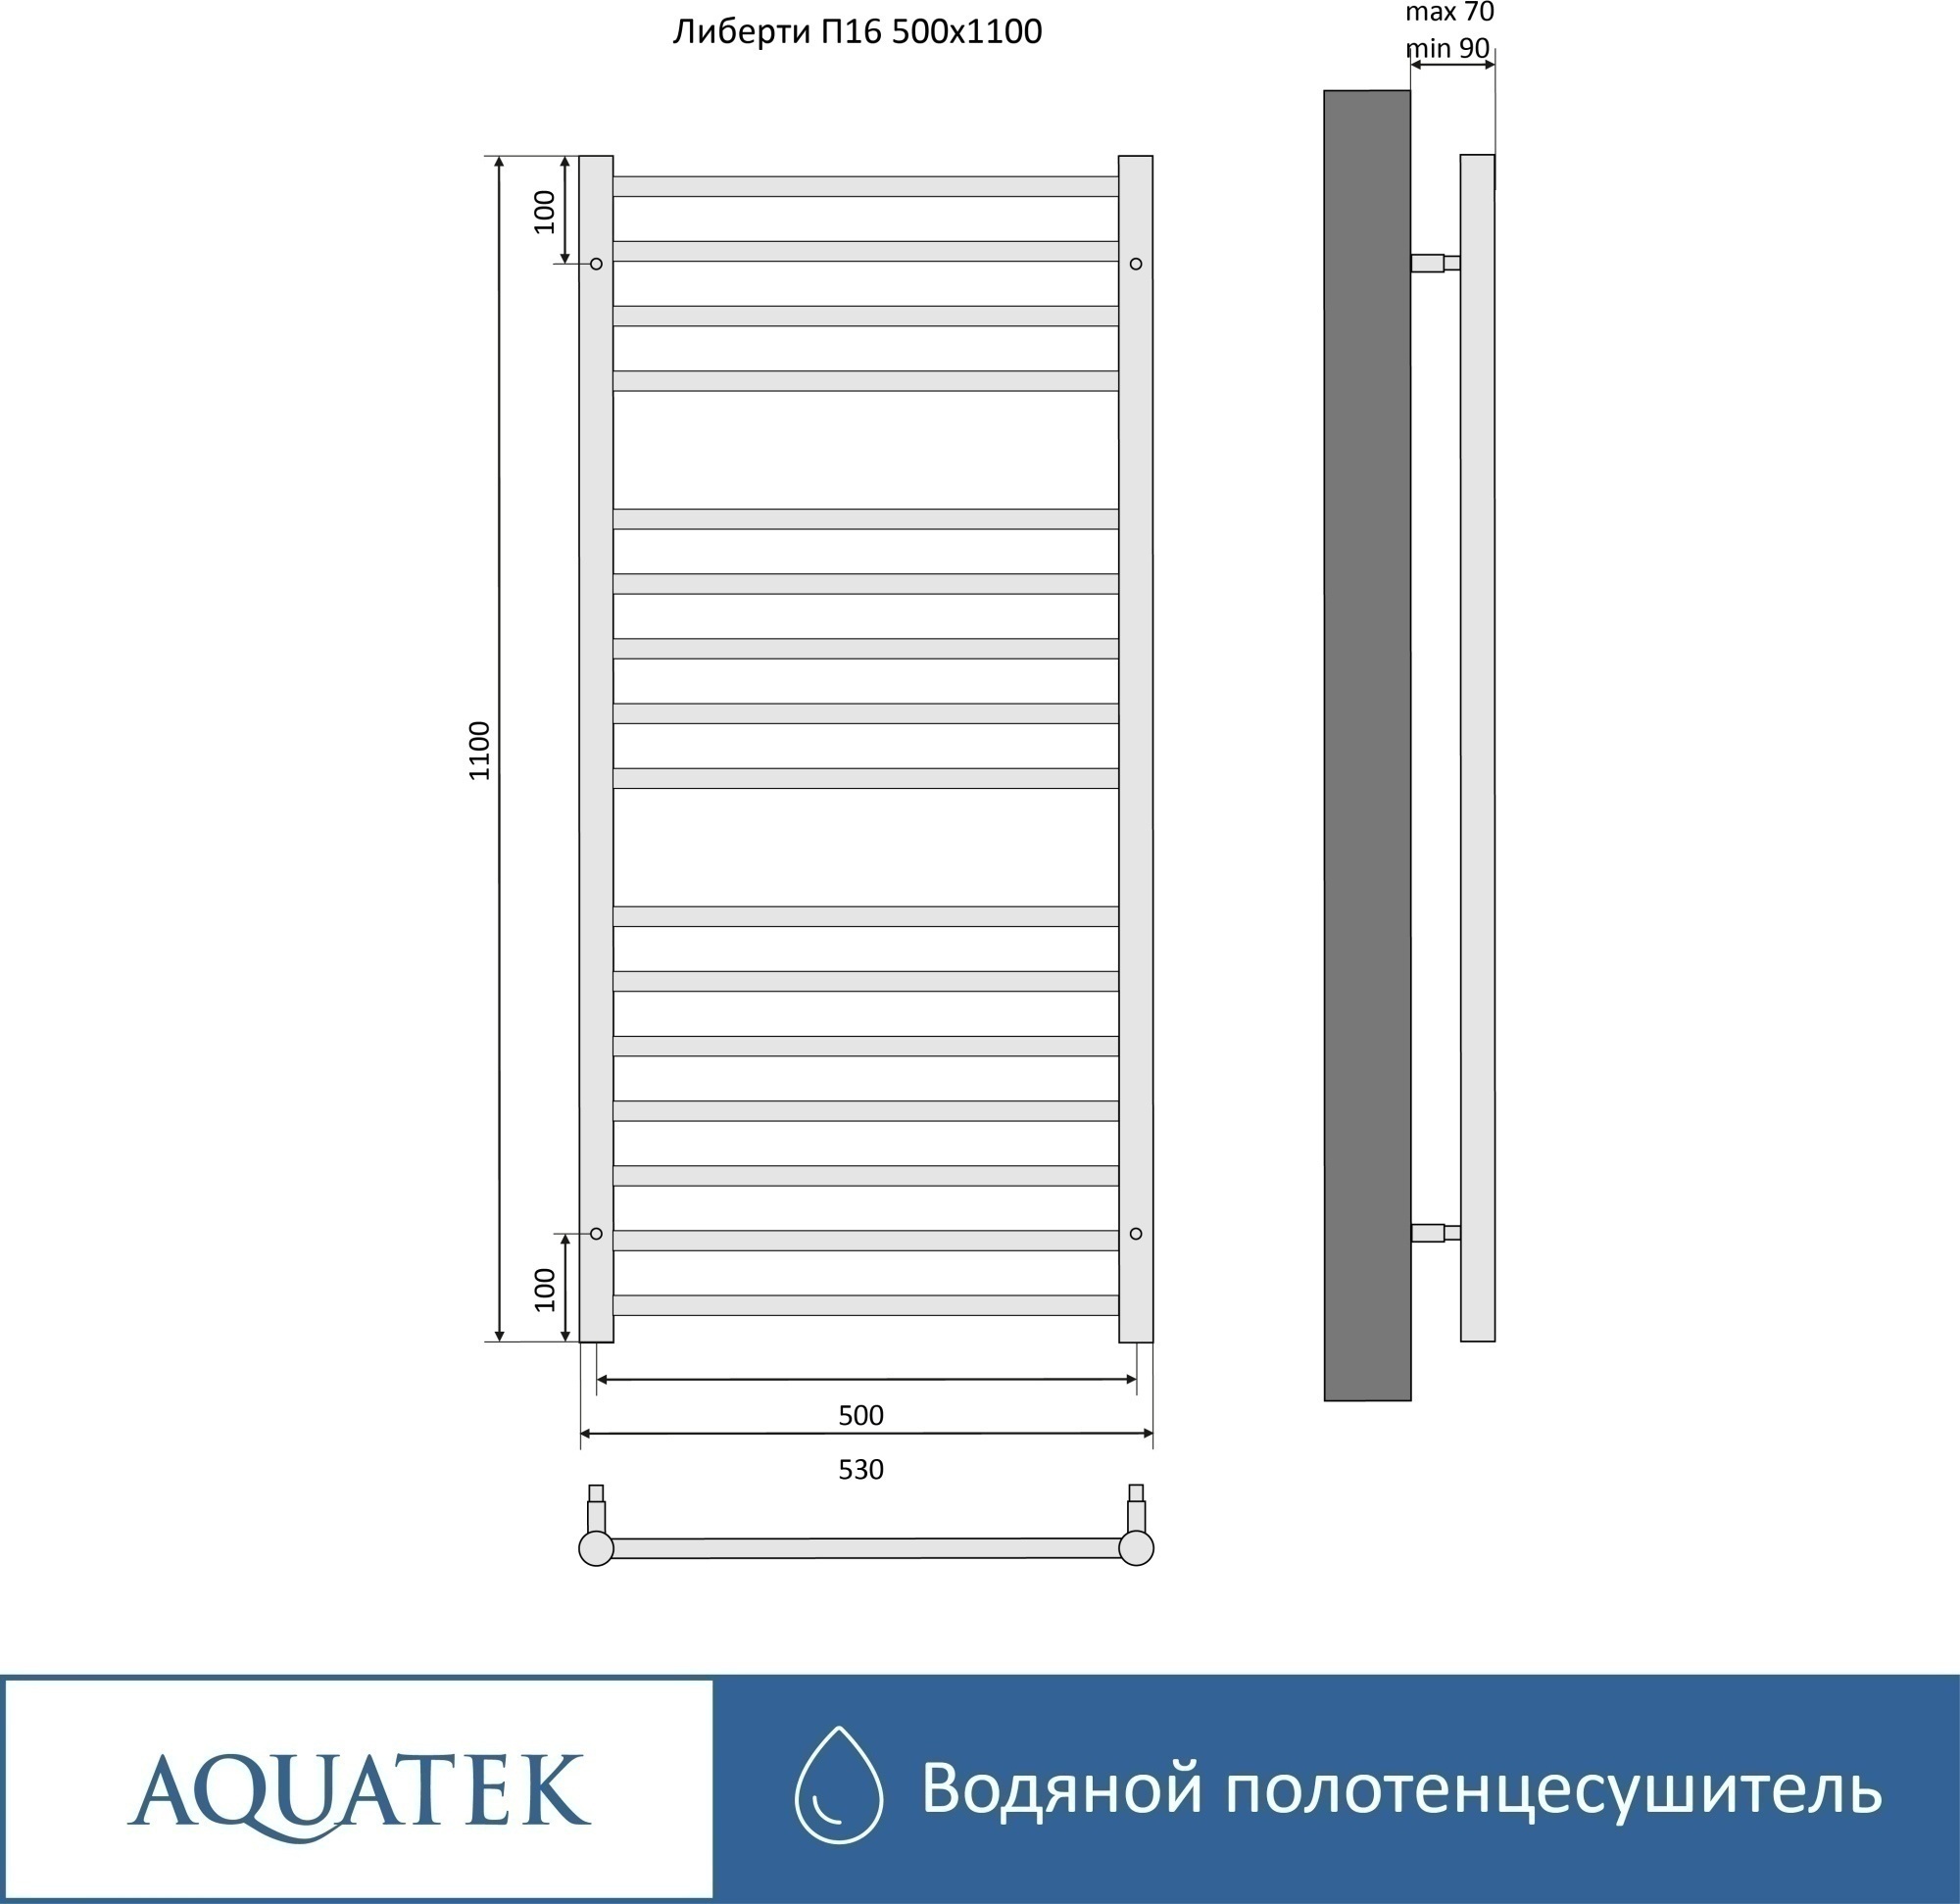 Полотенцесушитель водяной Aquatek Либерти П16 50x110 AQ RR1610BL